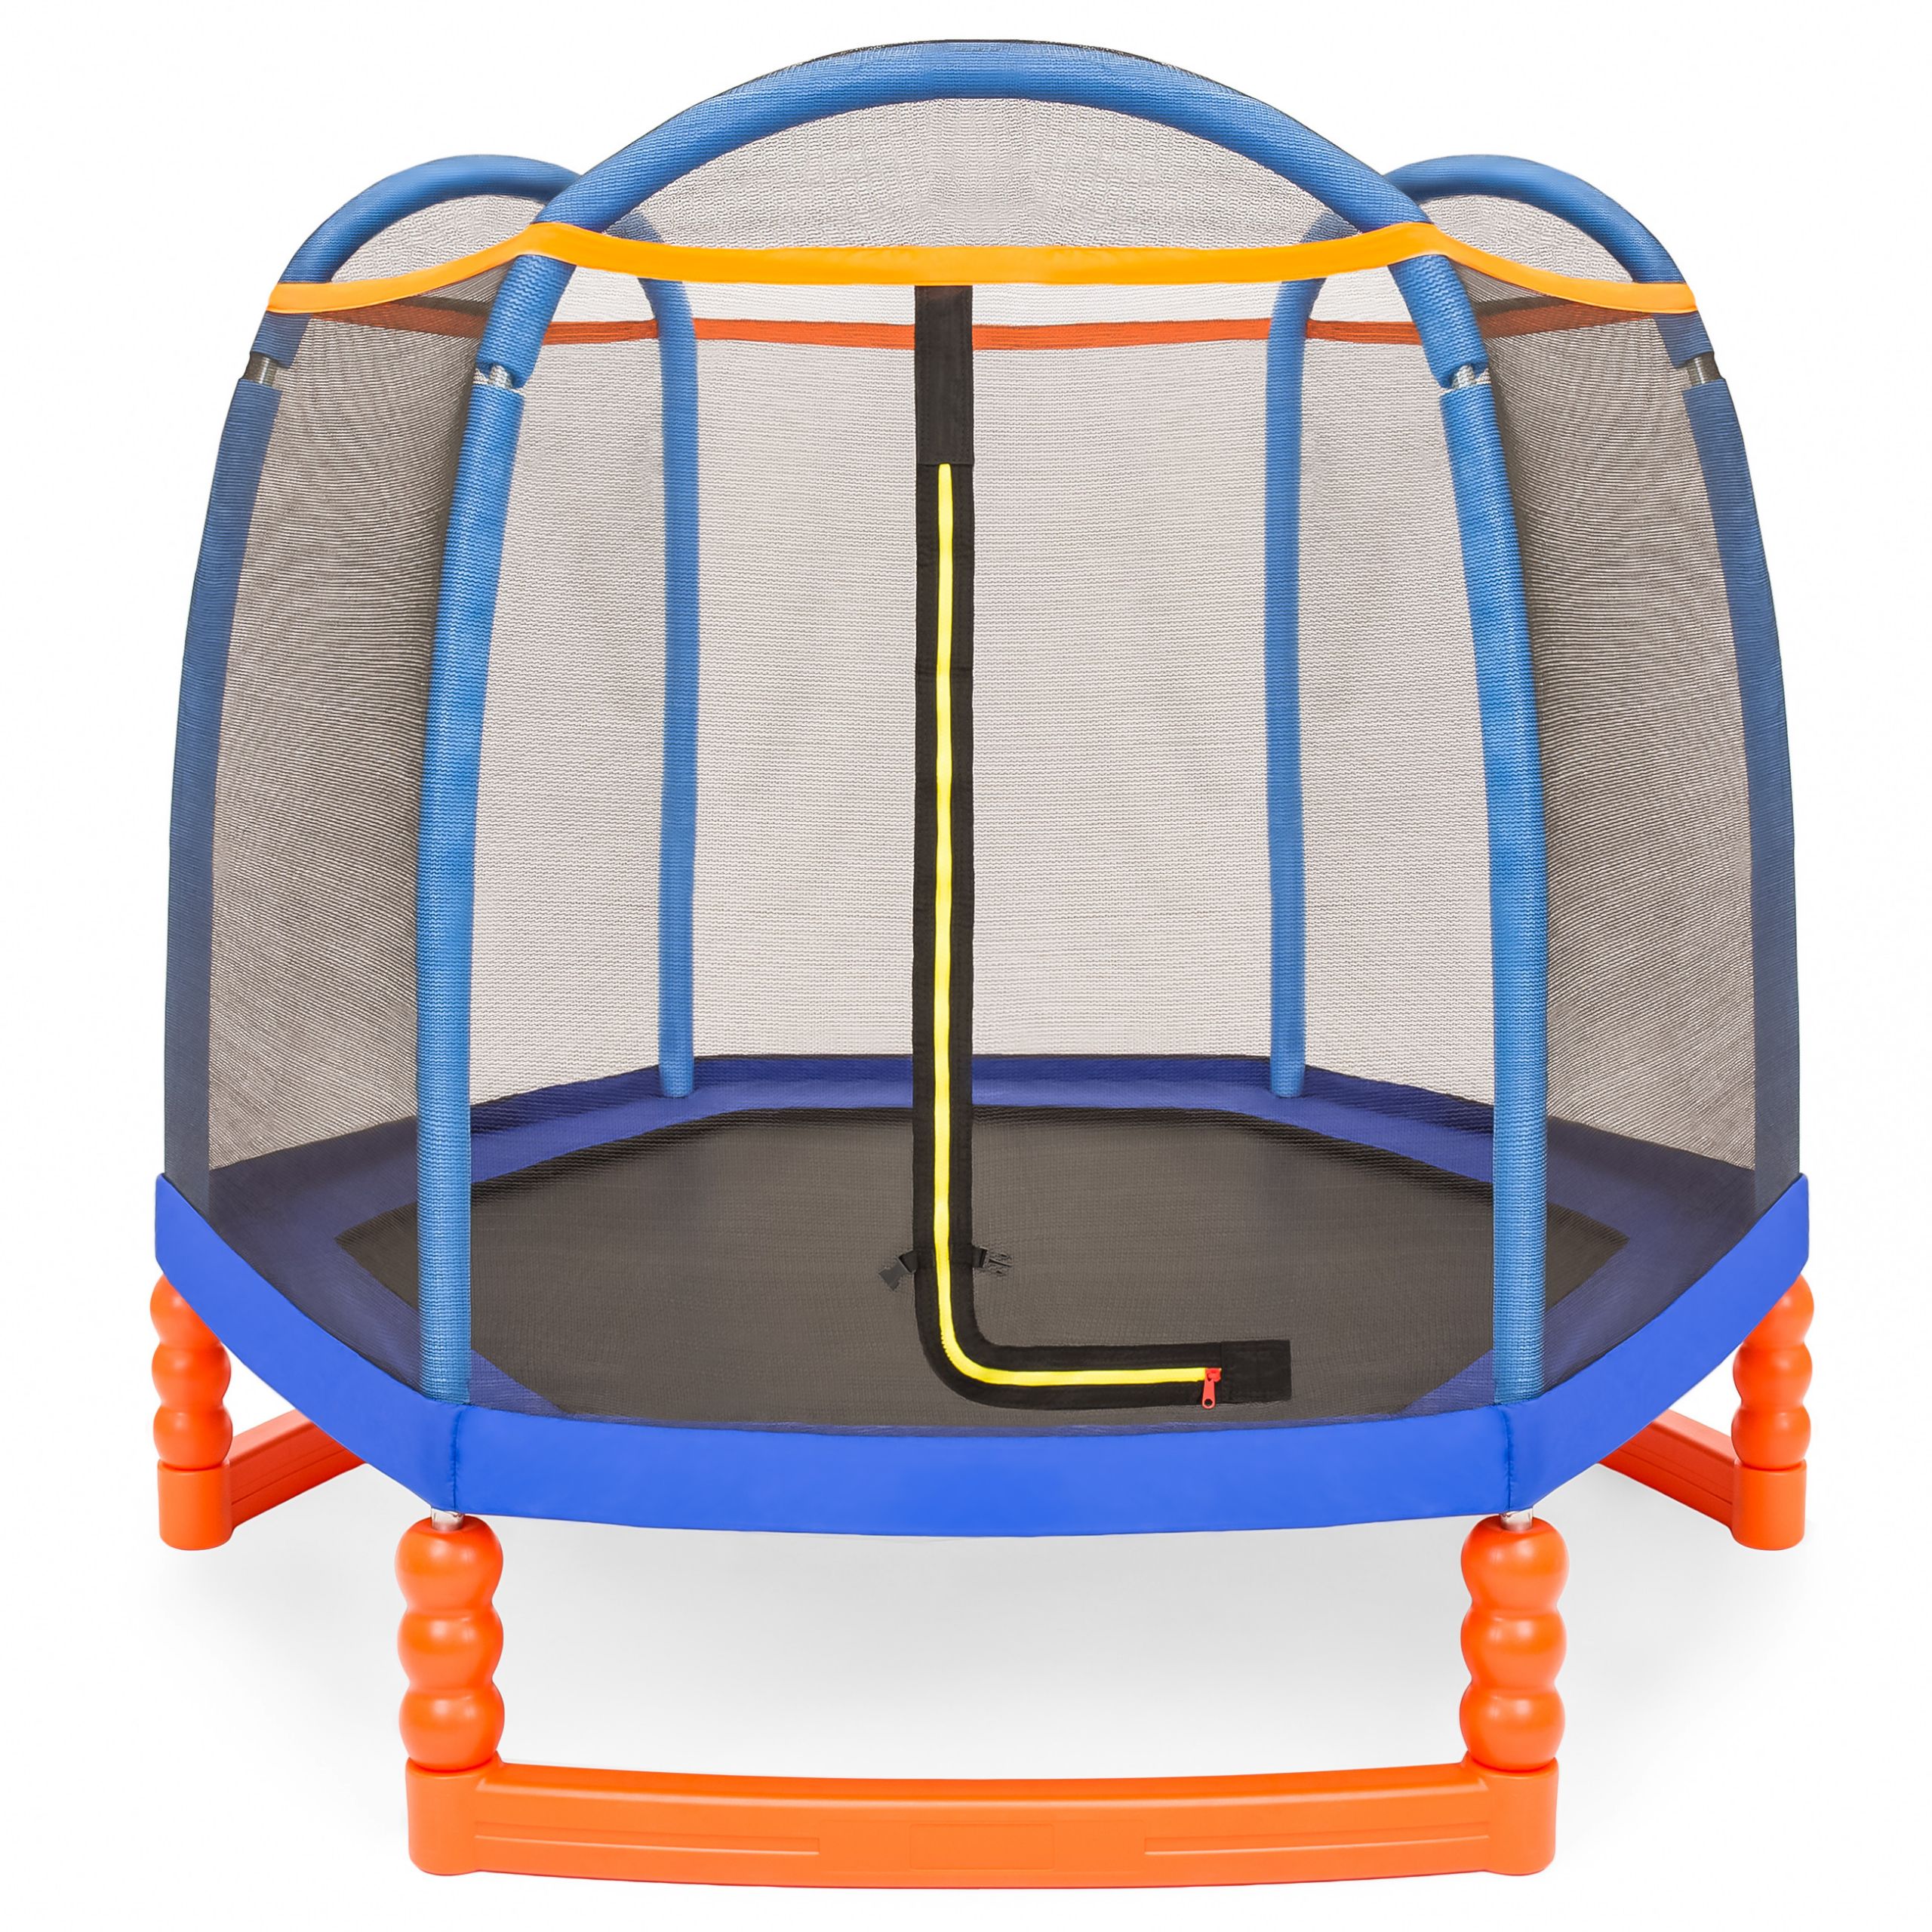 Best Indoor Trampoline For Kids
 BCP 7ft Kids Indoor Outdoor Mini Trampoline w Safety Net